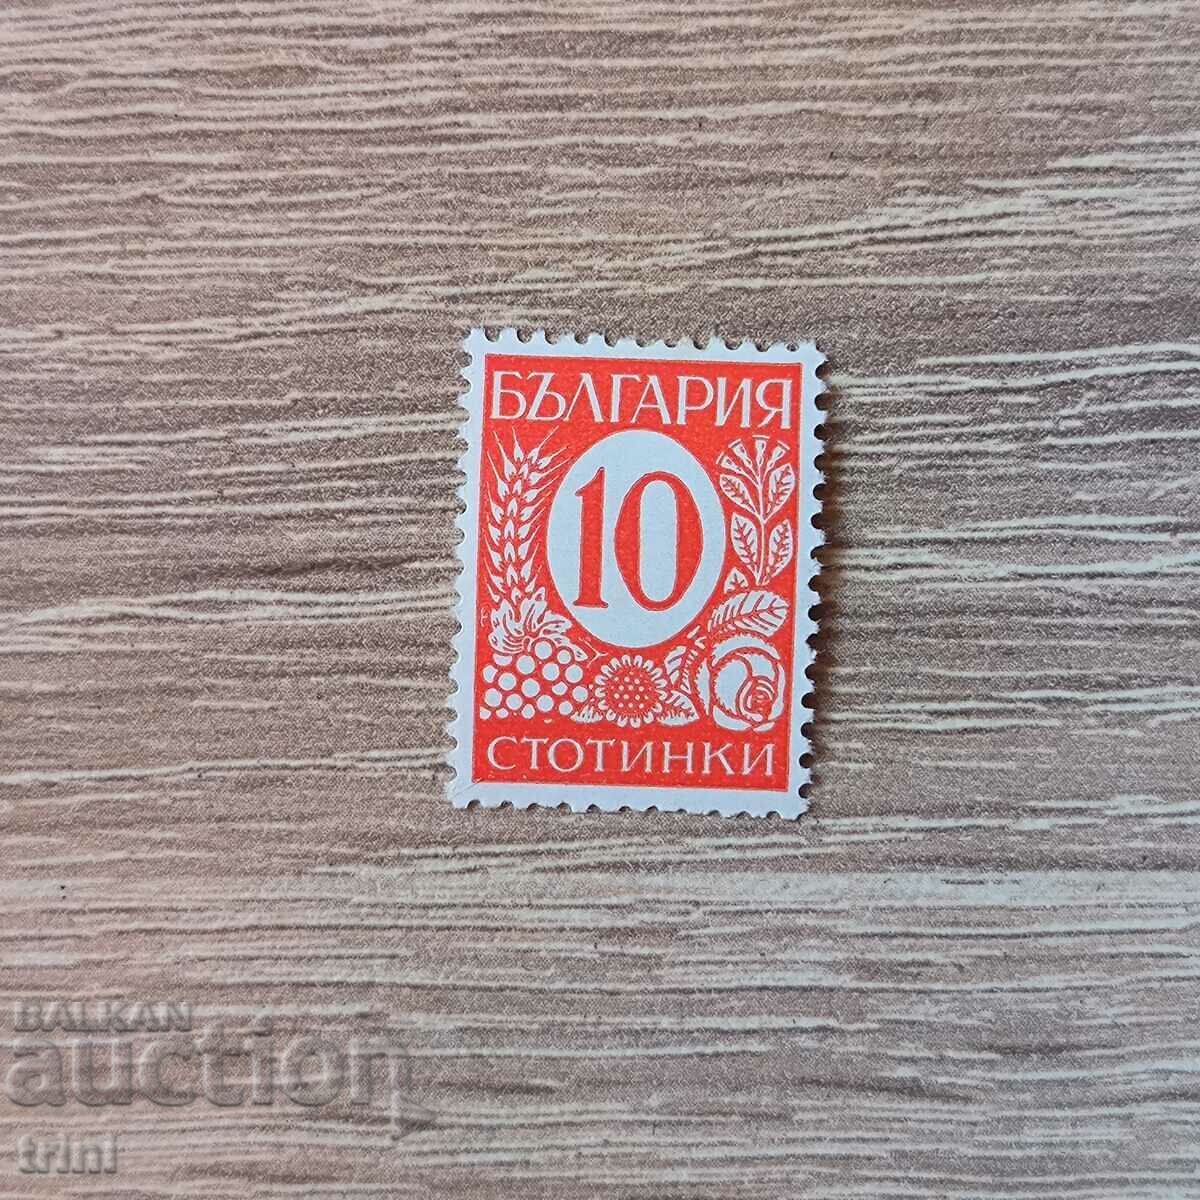 Bulgaria 1936 10 cenți